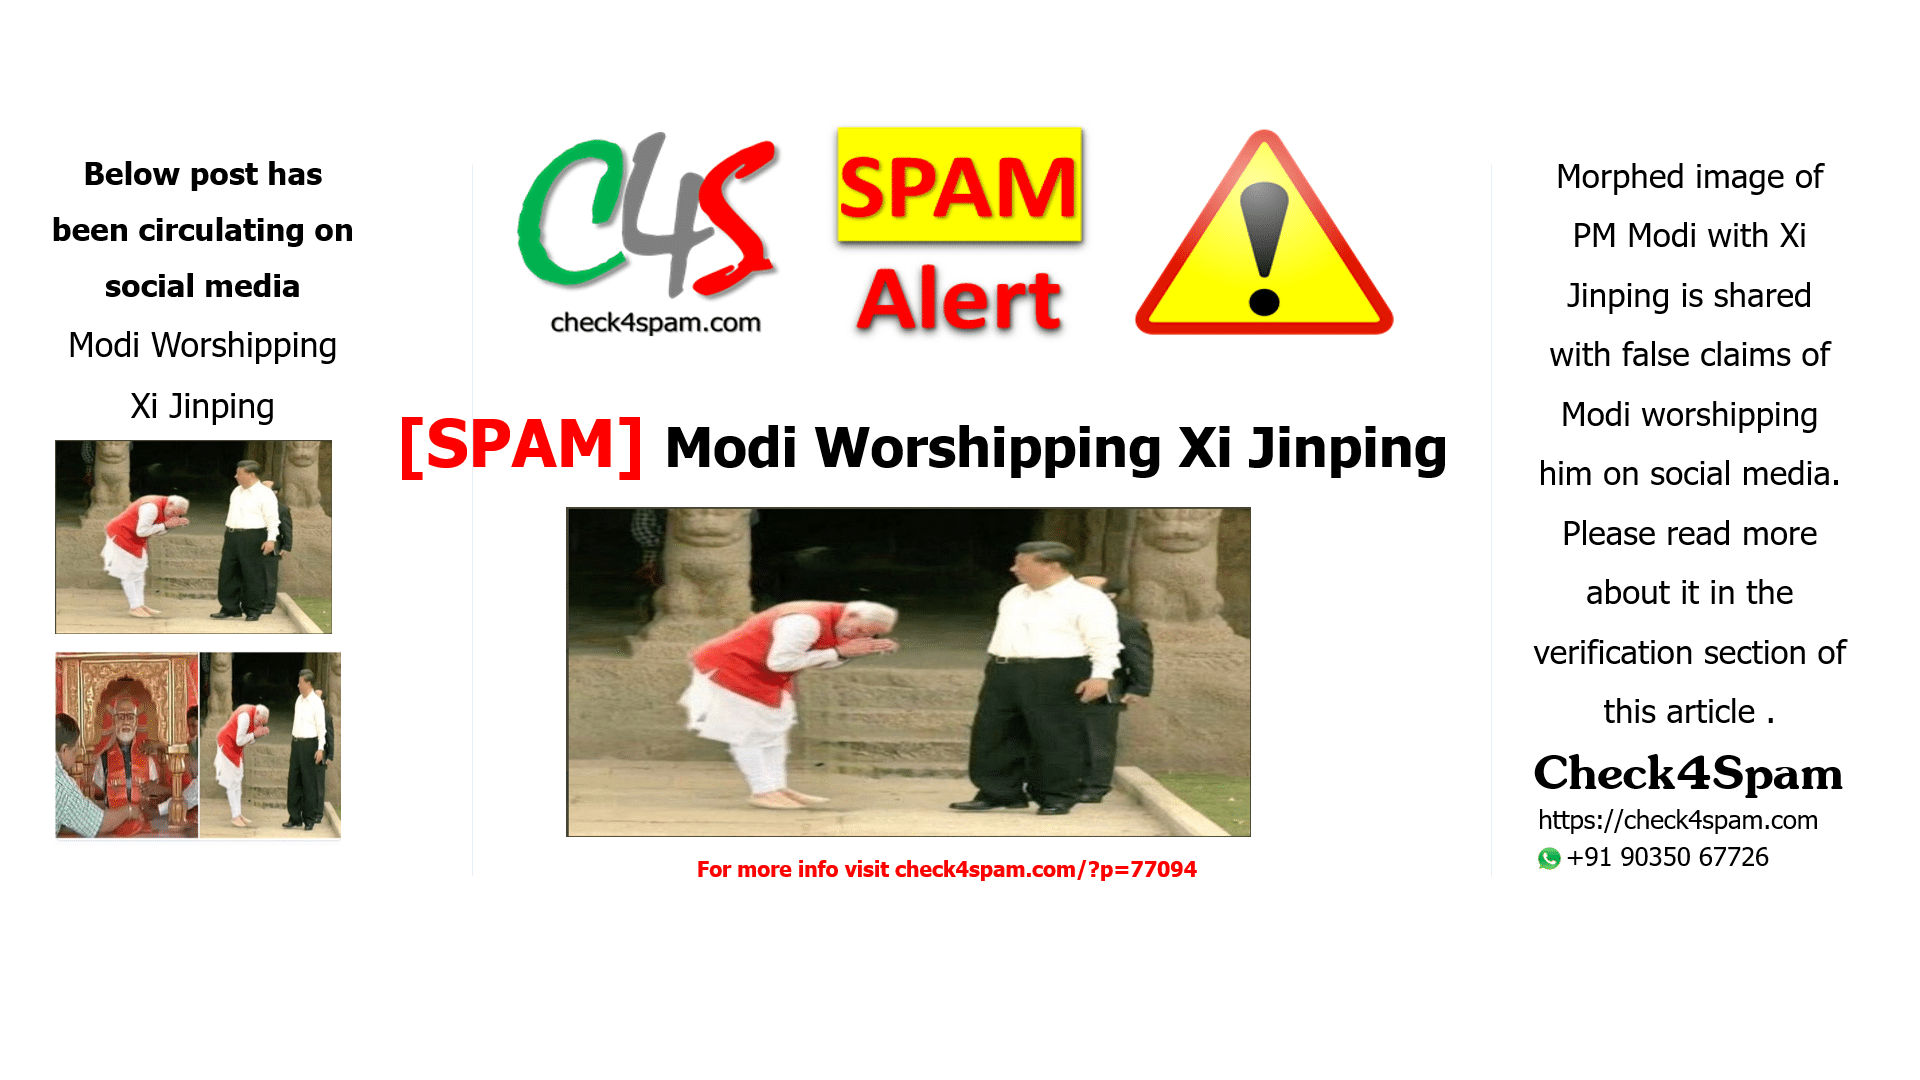 Modi Worshipping Xi Jinping